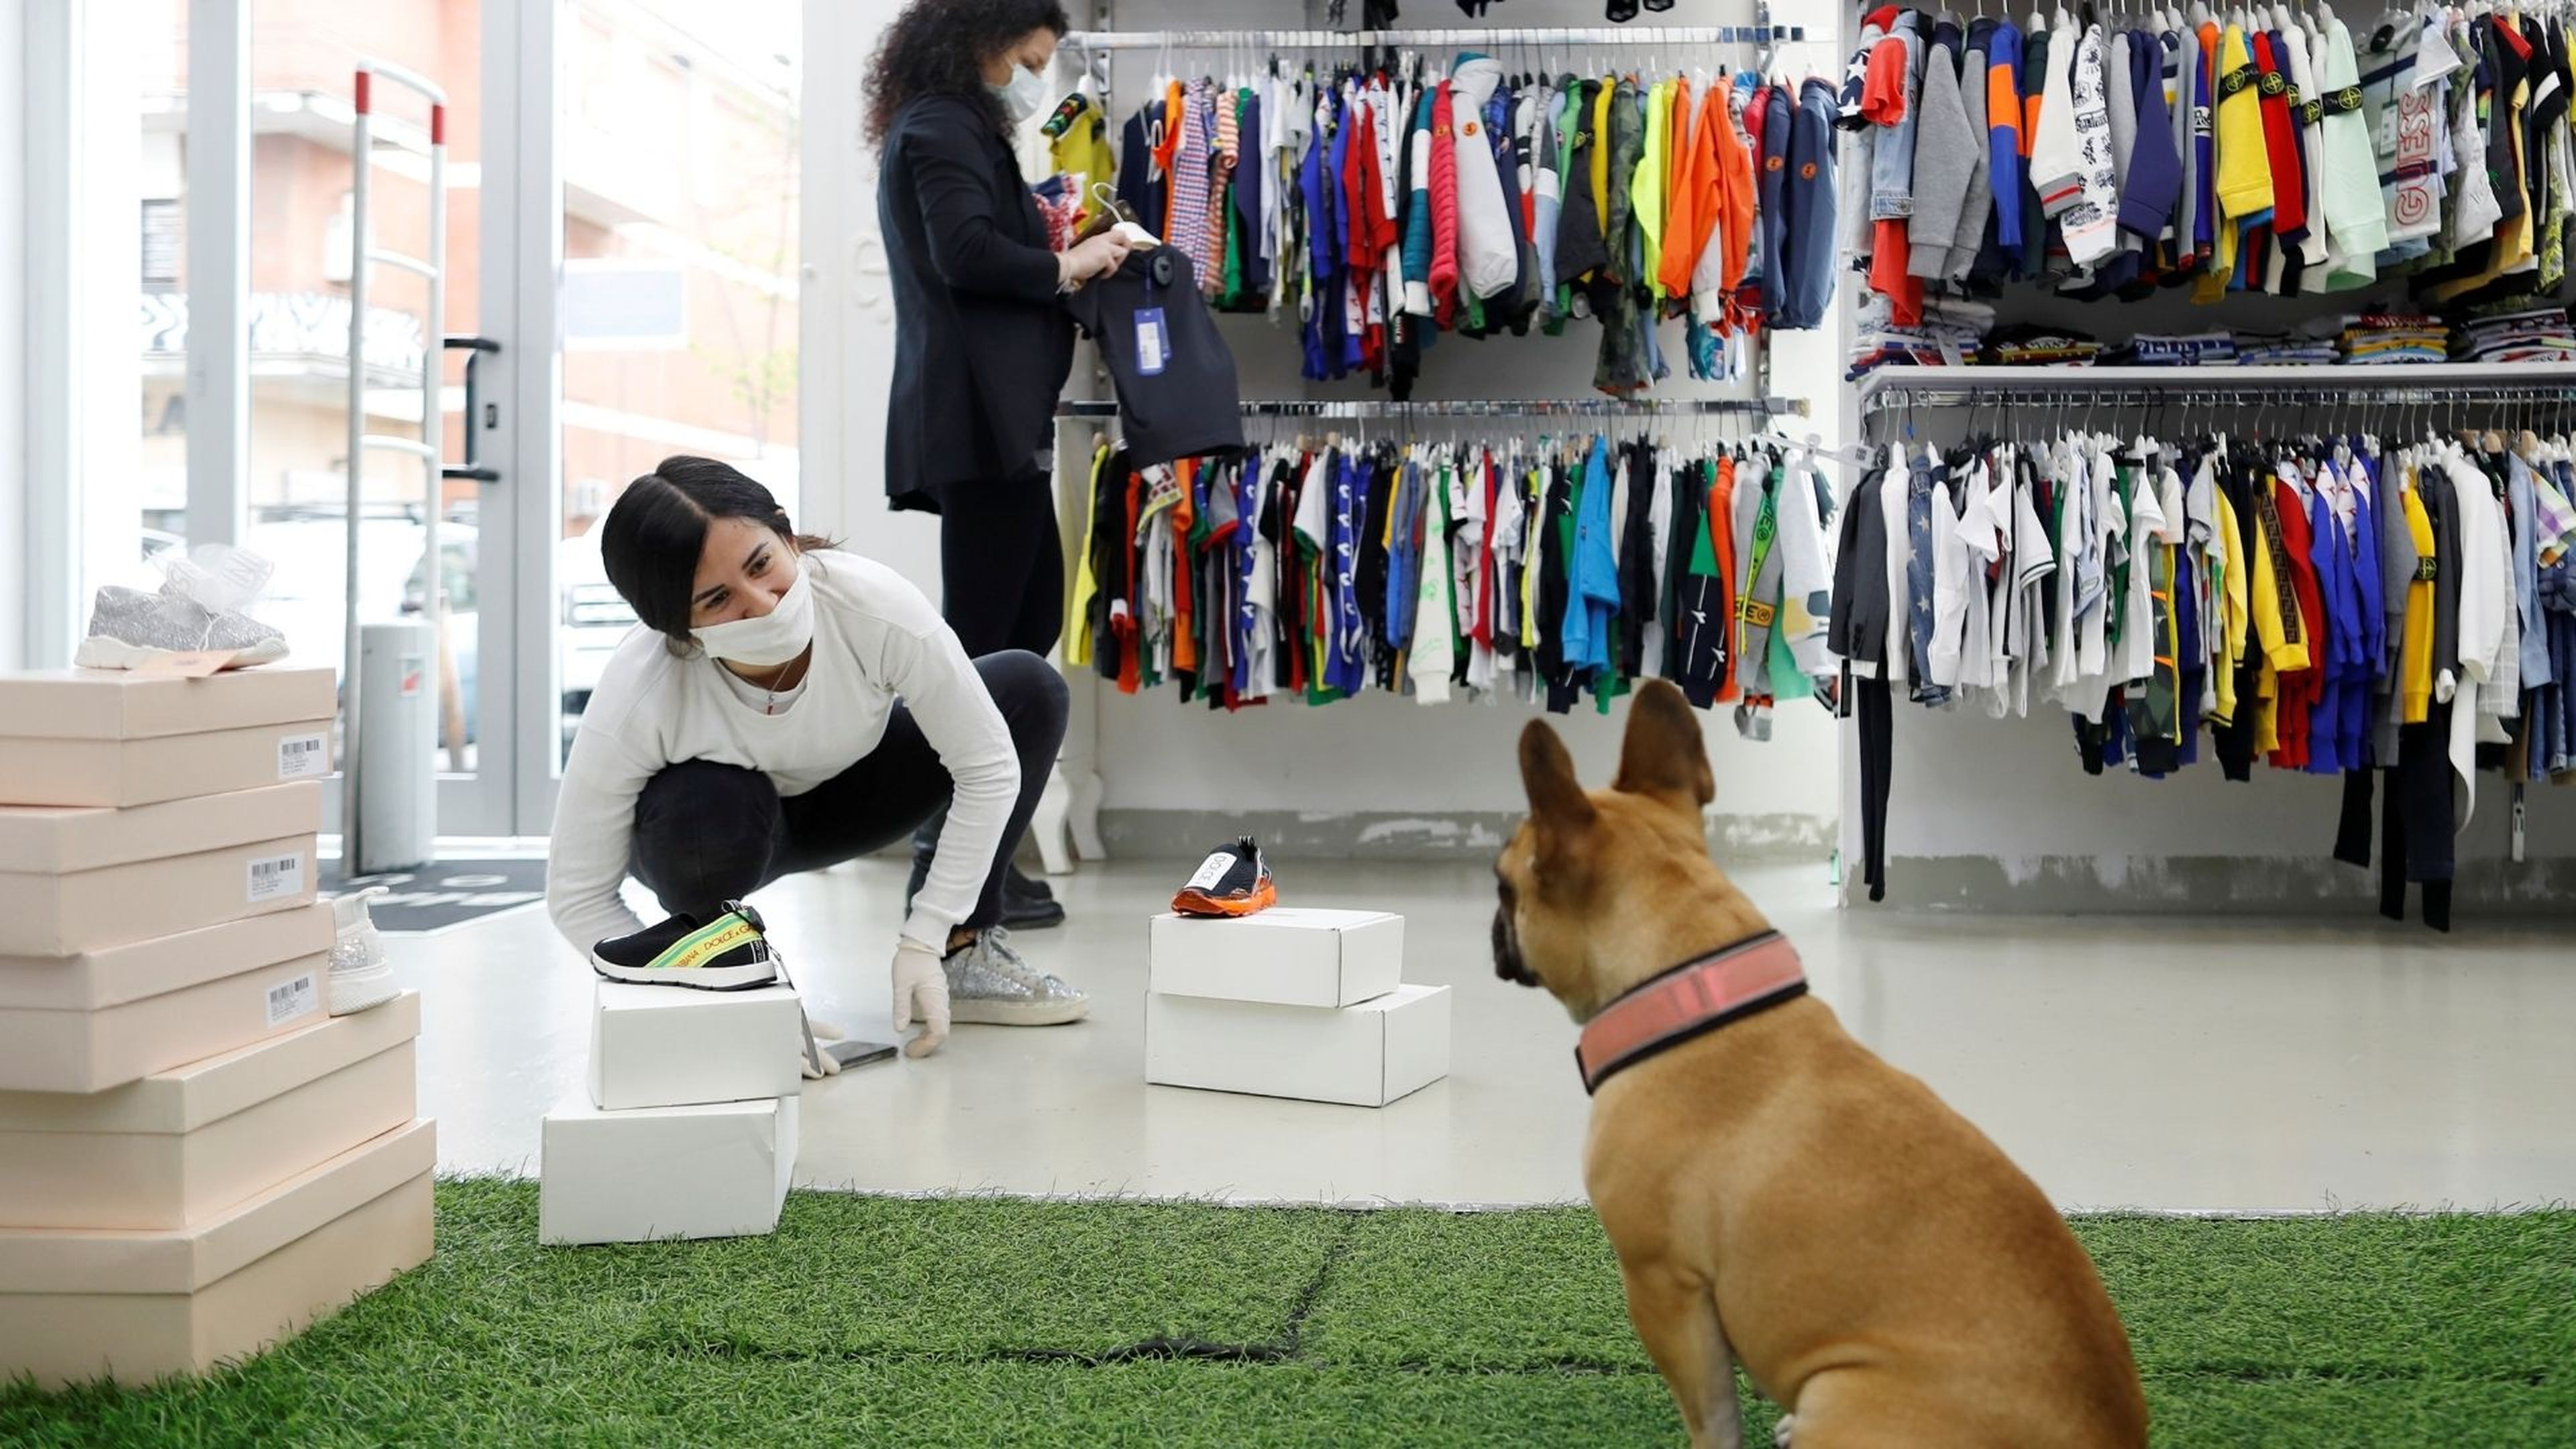 almuerzo Administración Oceanía Zara, Mediamark, H&M y más: tiendas que admiten perros en su interior |  Business Insider España